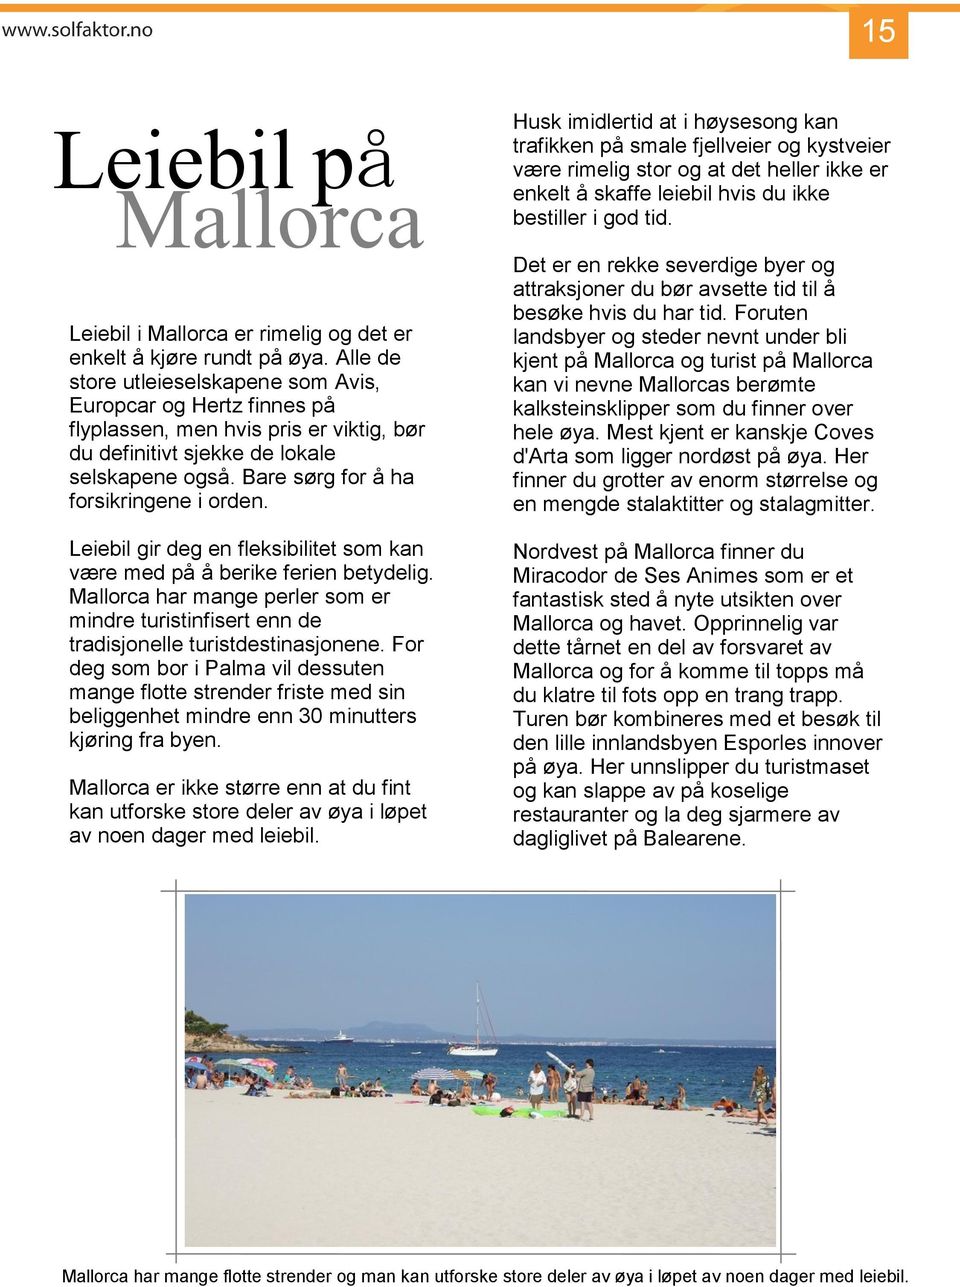 Leiebil gir deg en fleksibilitet som kan være med på å berike ferien betydelig. Mallorca har mange perler som er mindre turistinfisert enn de tradisjonelle turistdestinasjonene.